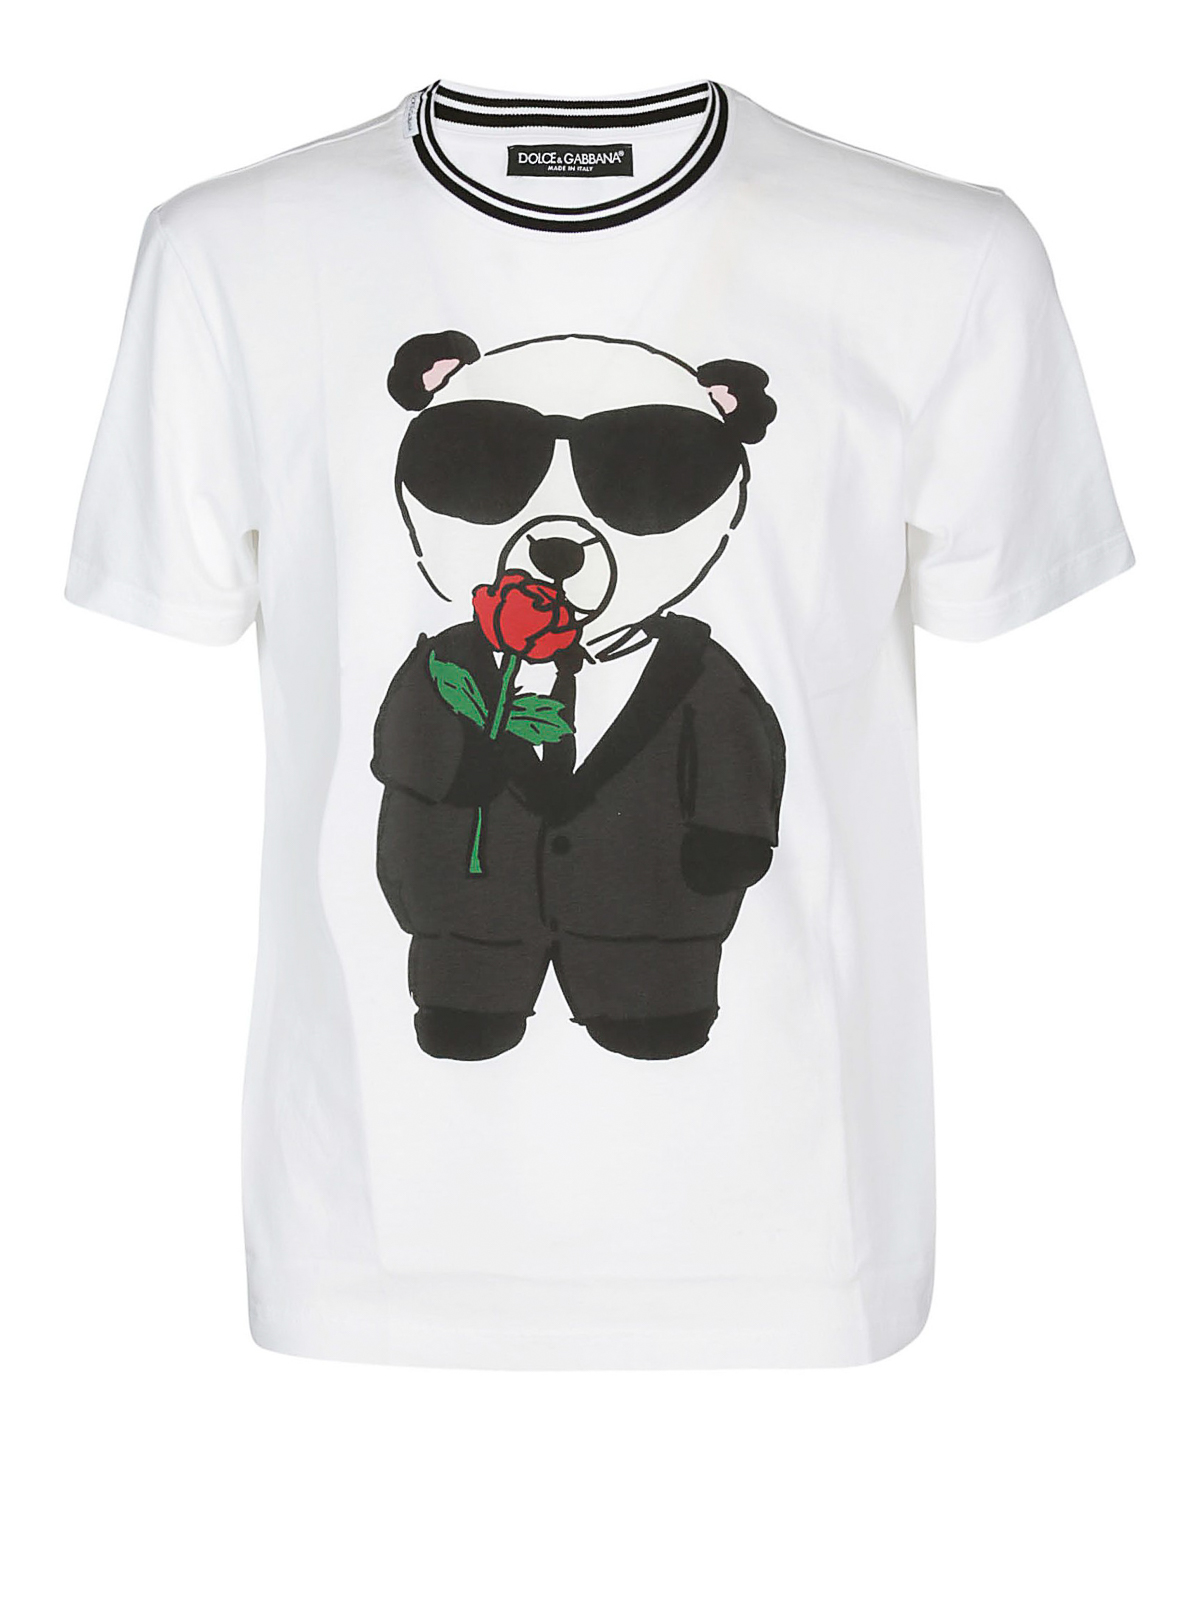 dolce gabbana panda shirt